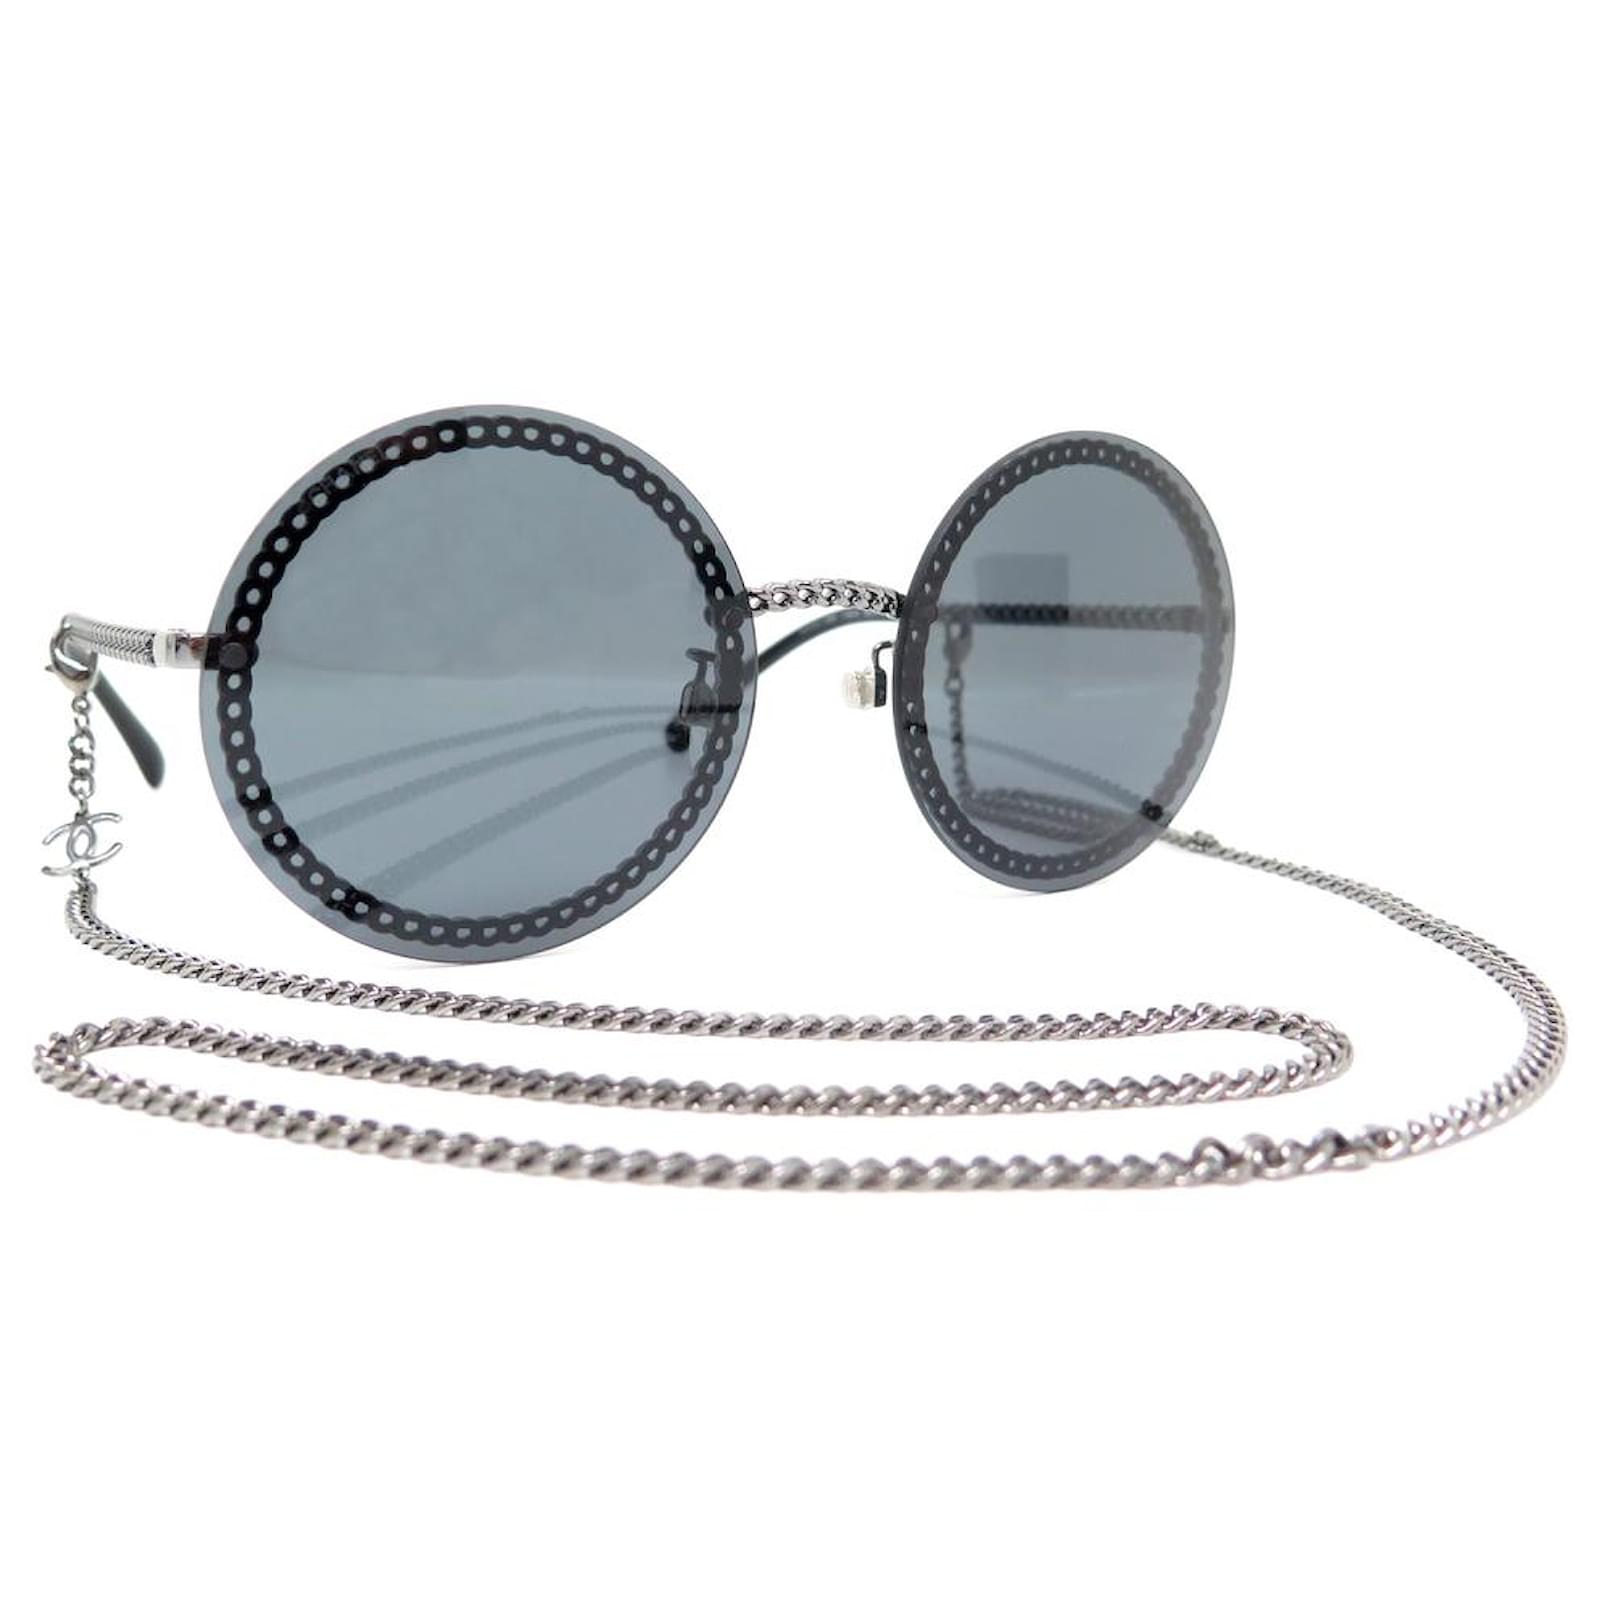 chain sunglasses chanel